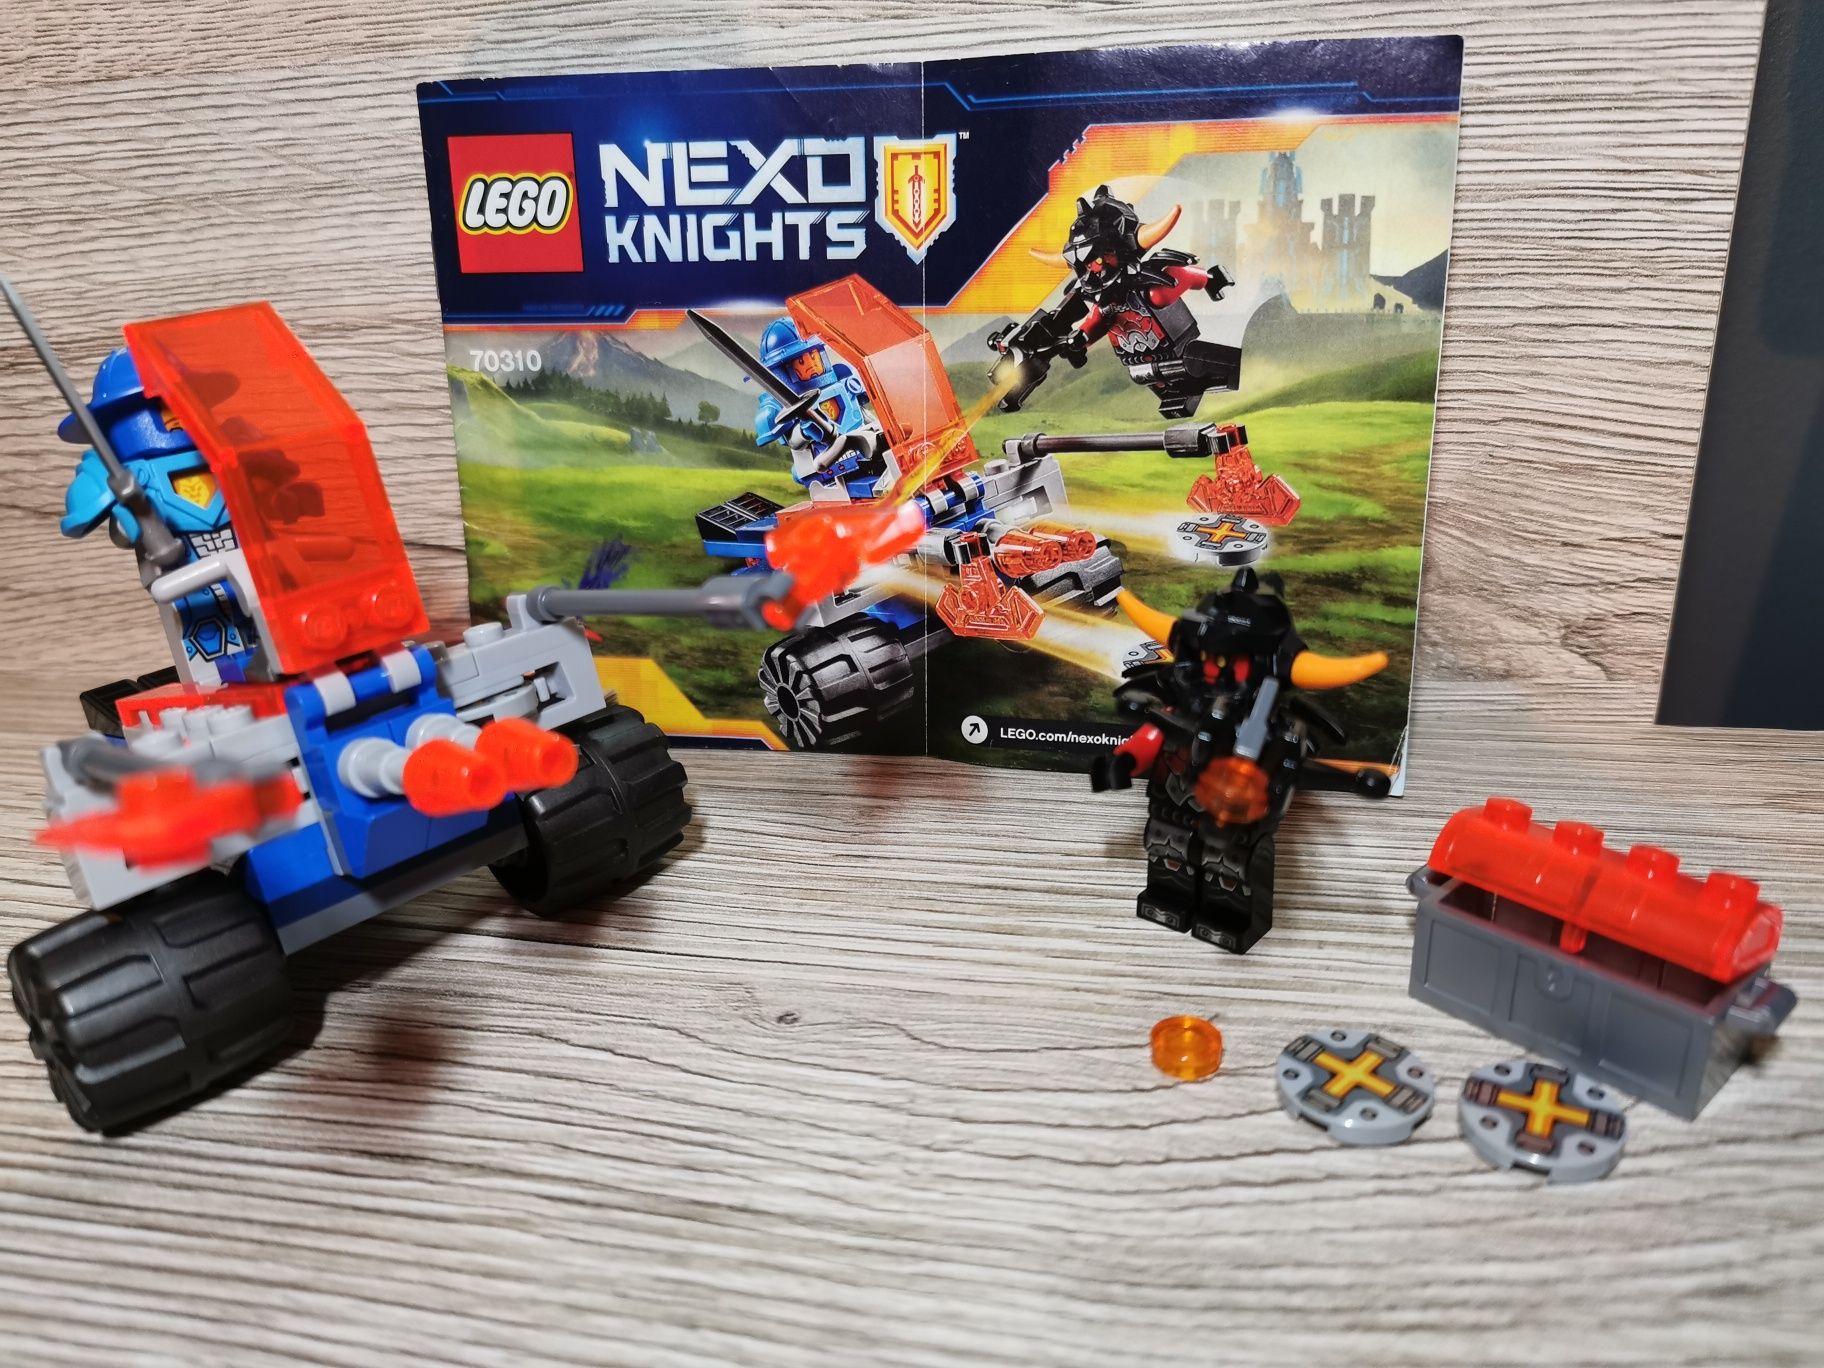 Lego Nexo Knights 70310 Pojazd bojowy Knighton kompletny